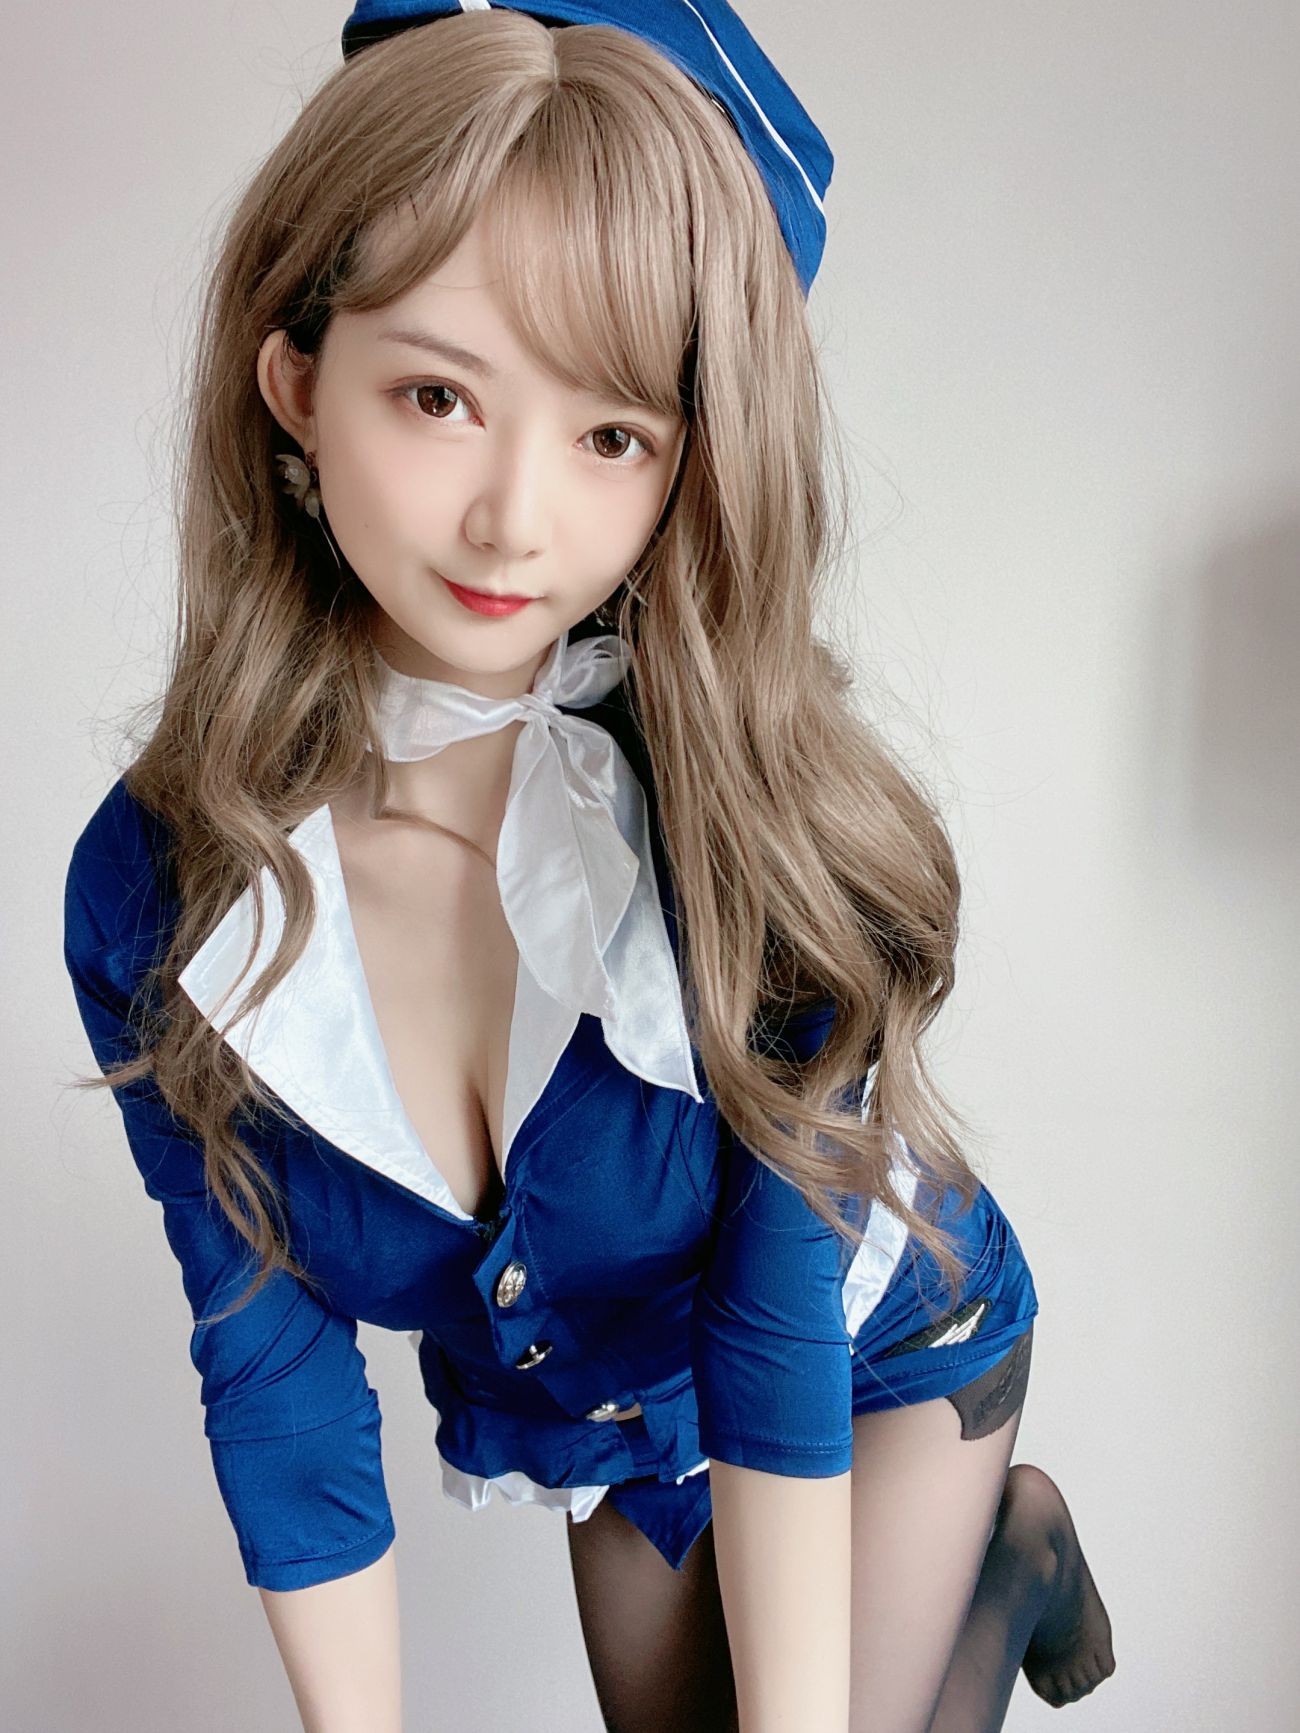 微博美少女51酱性感写真蓝色制服装 (21)